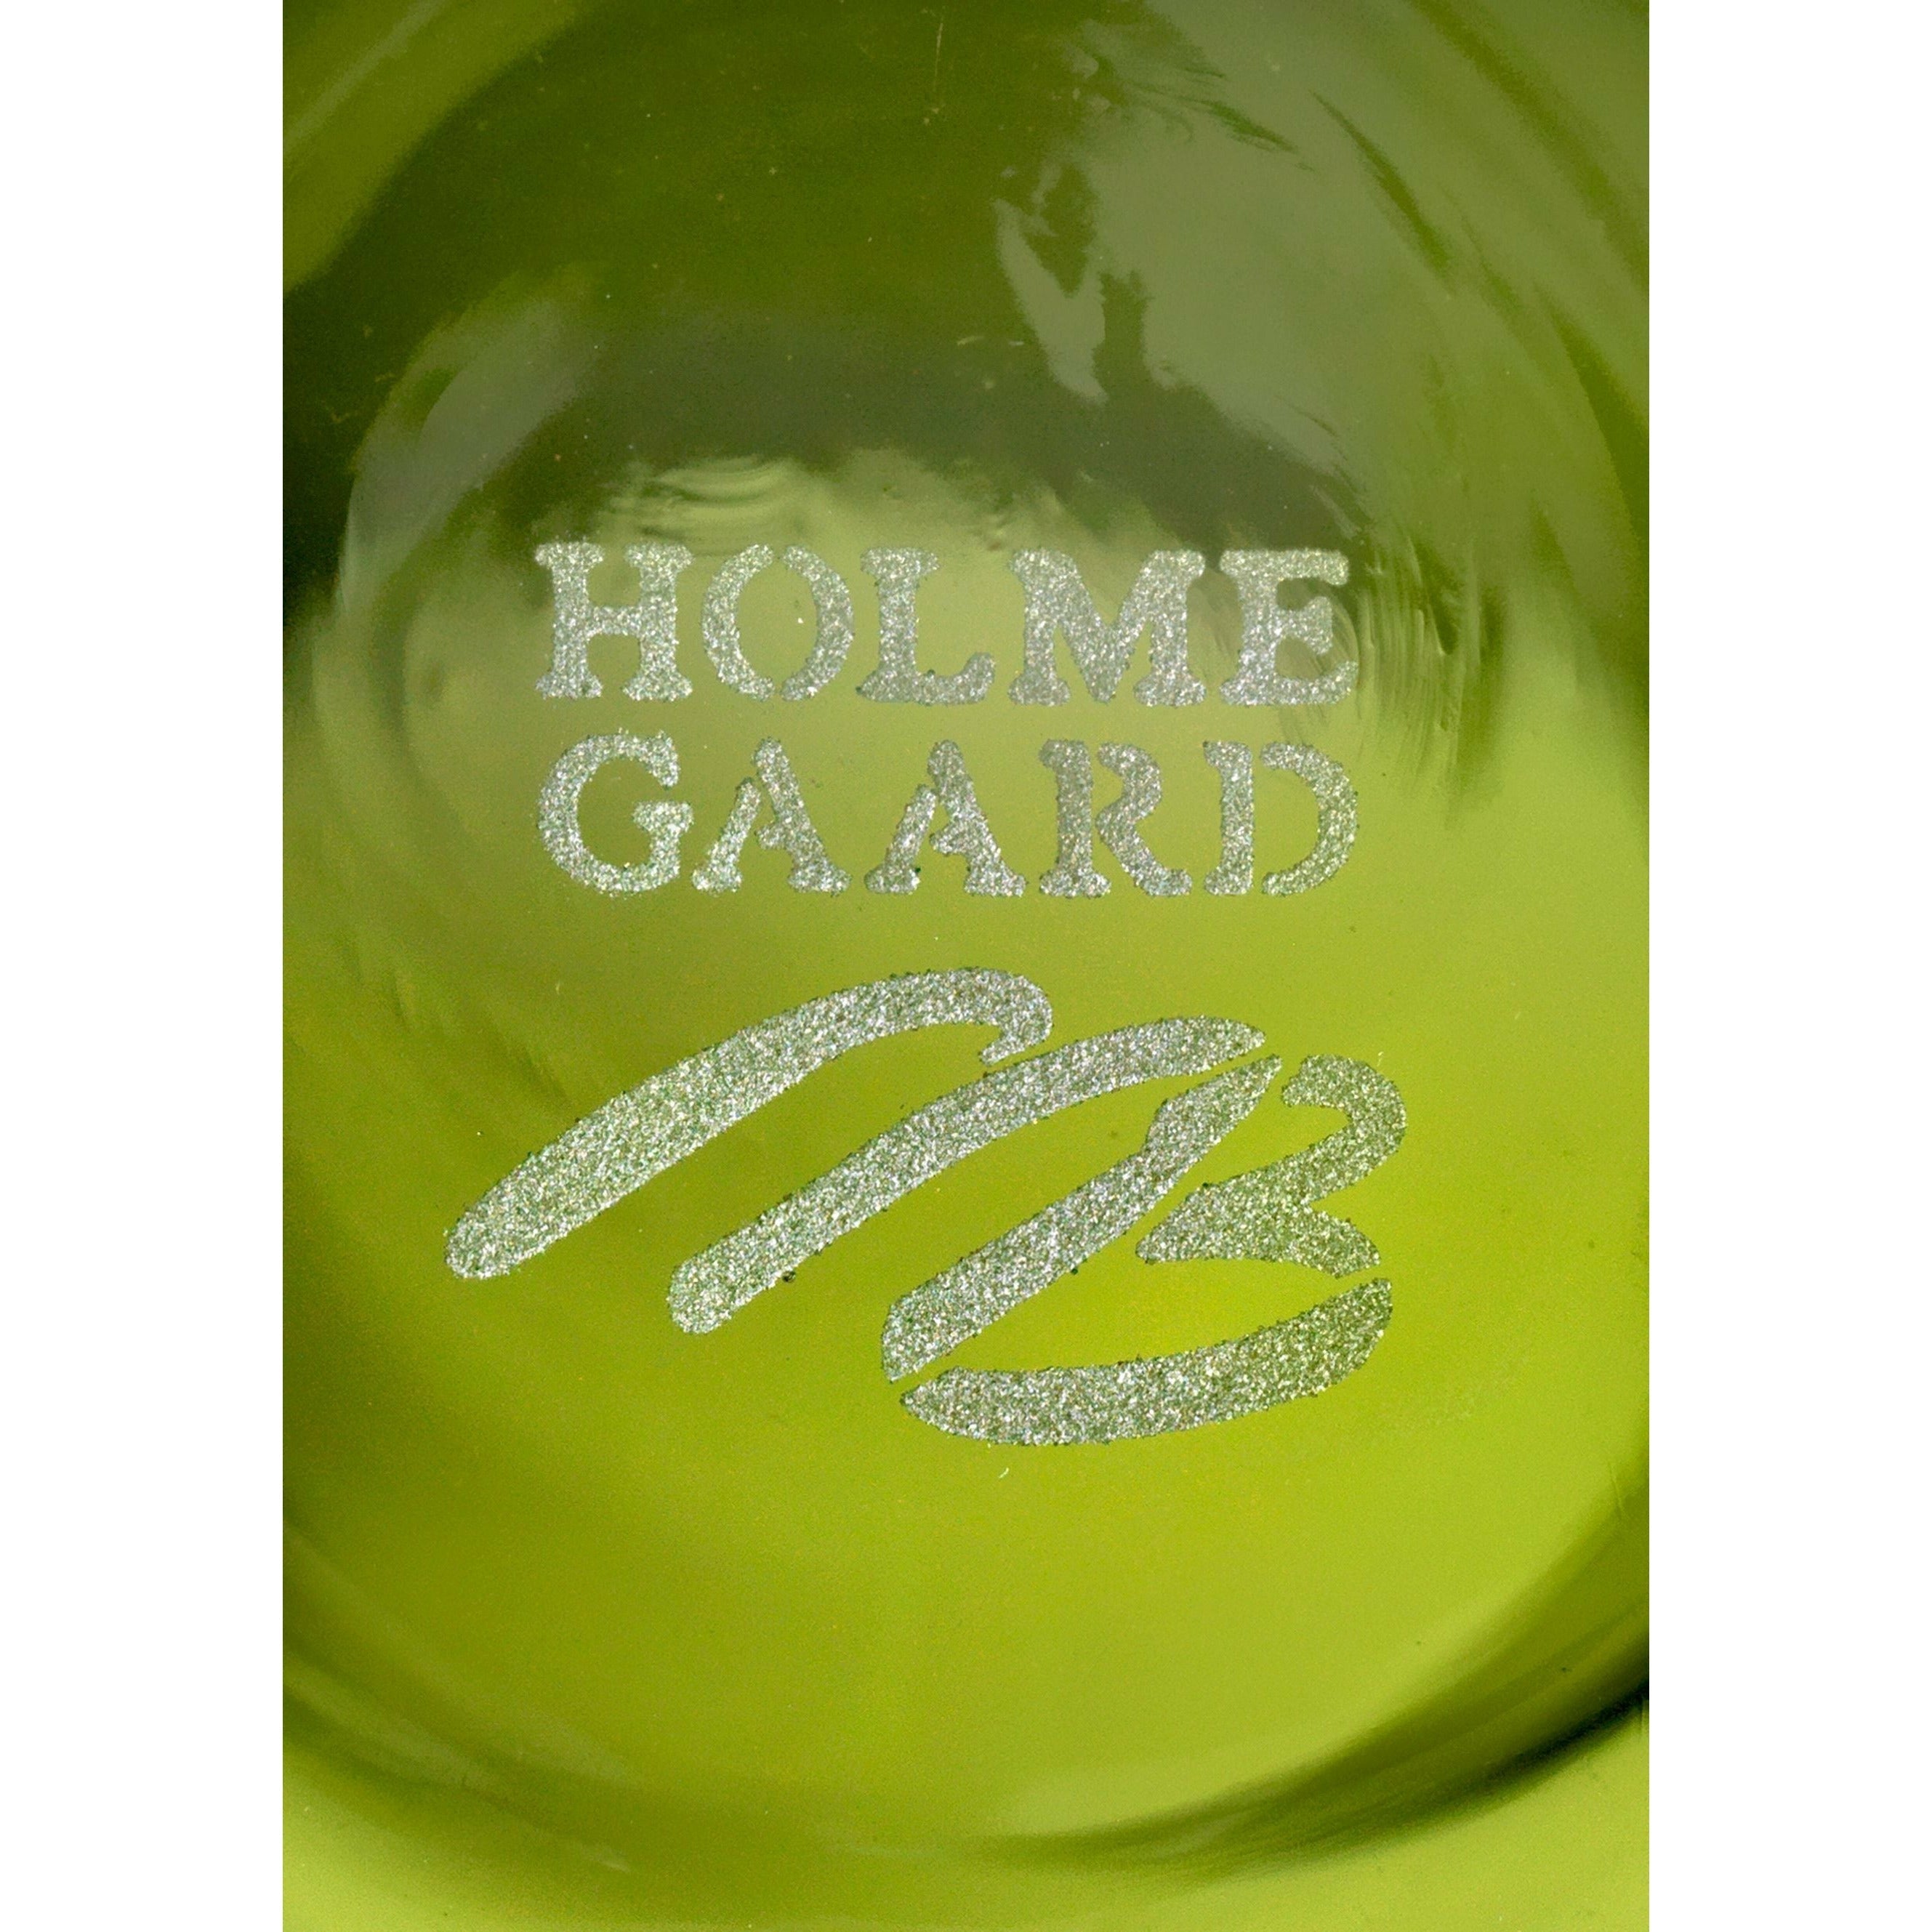 Holmegaard Dwl lanterne 29 cm, vert olive